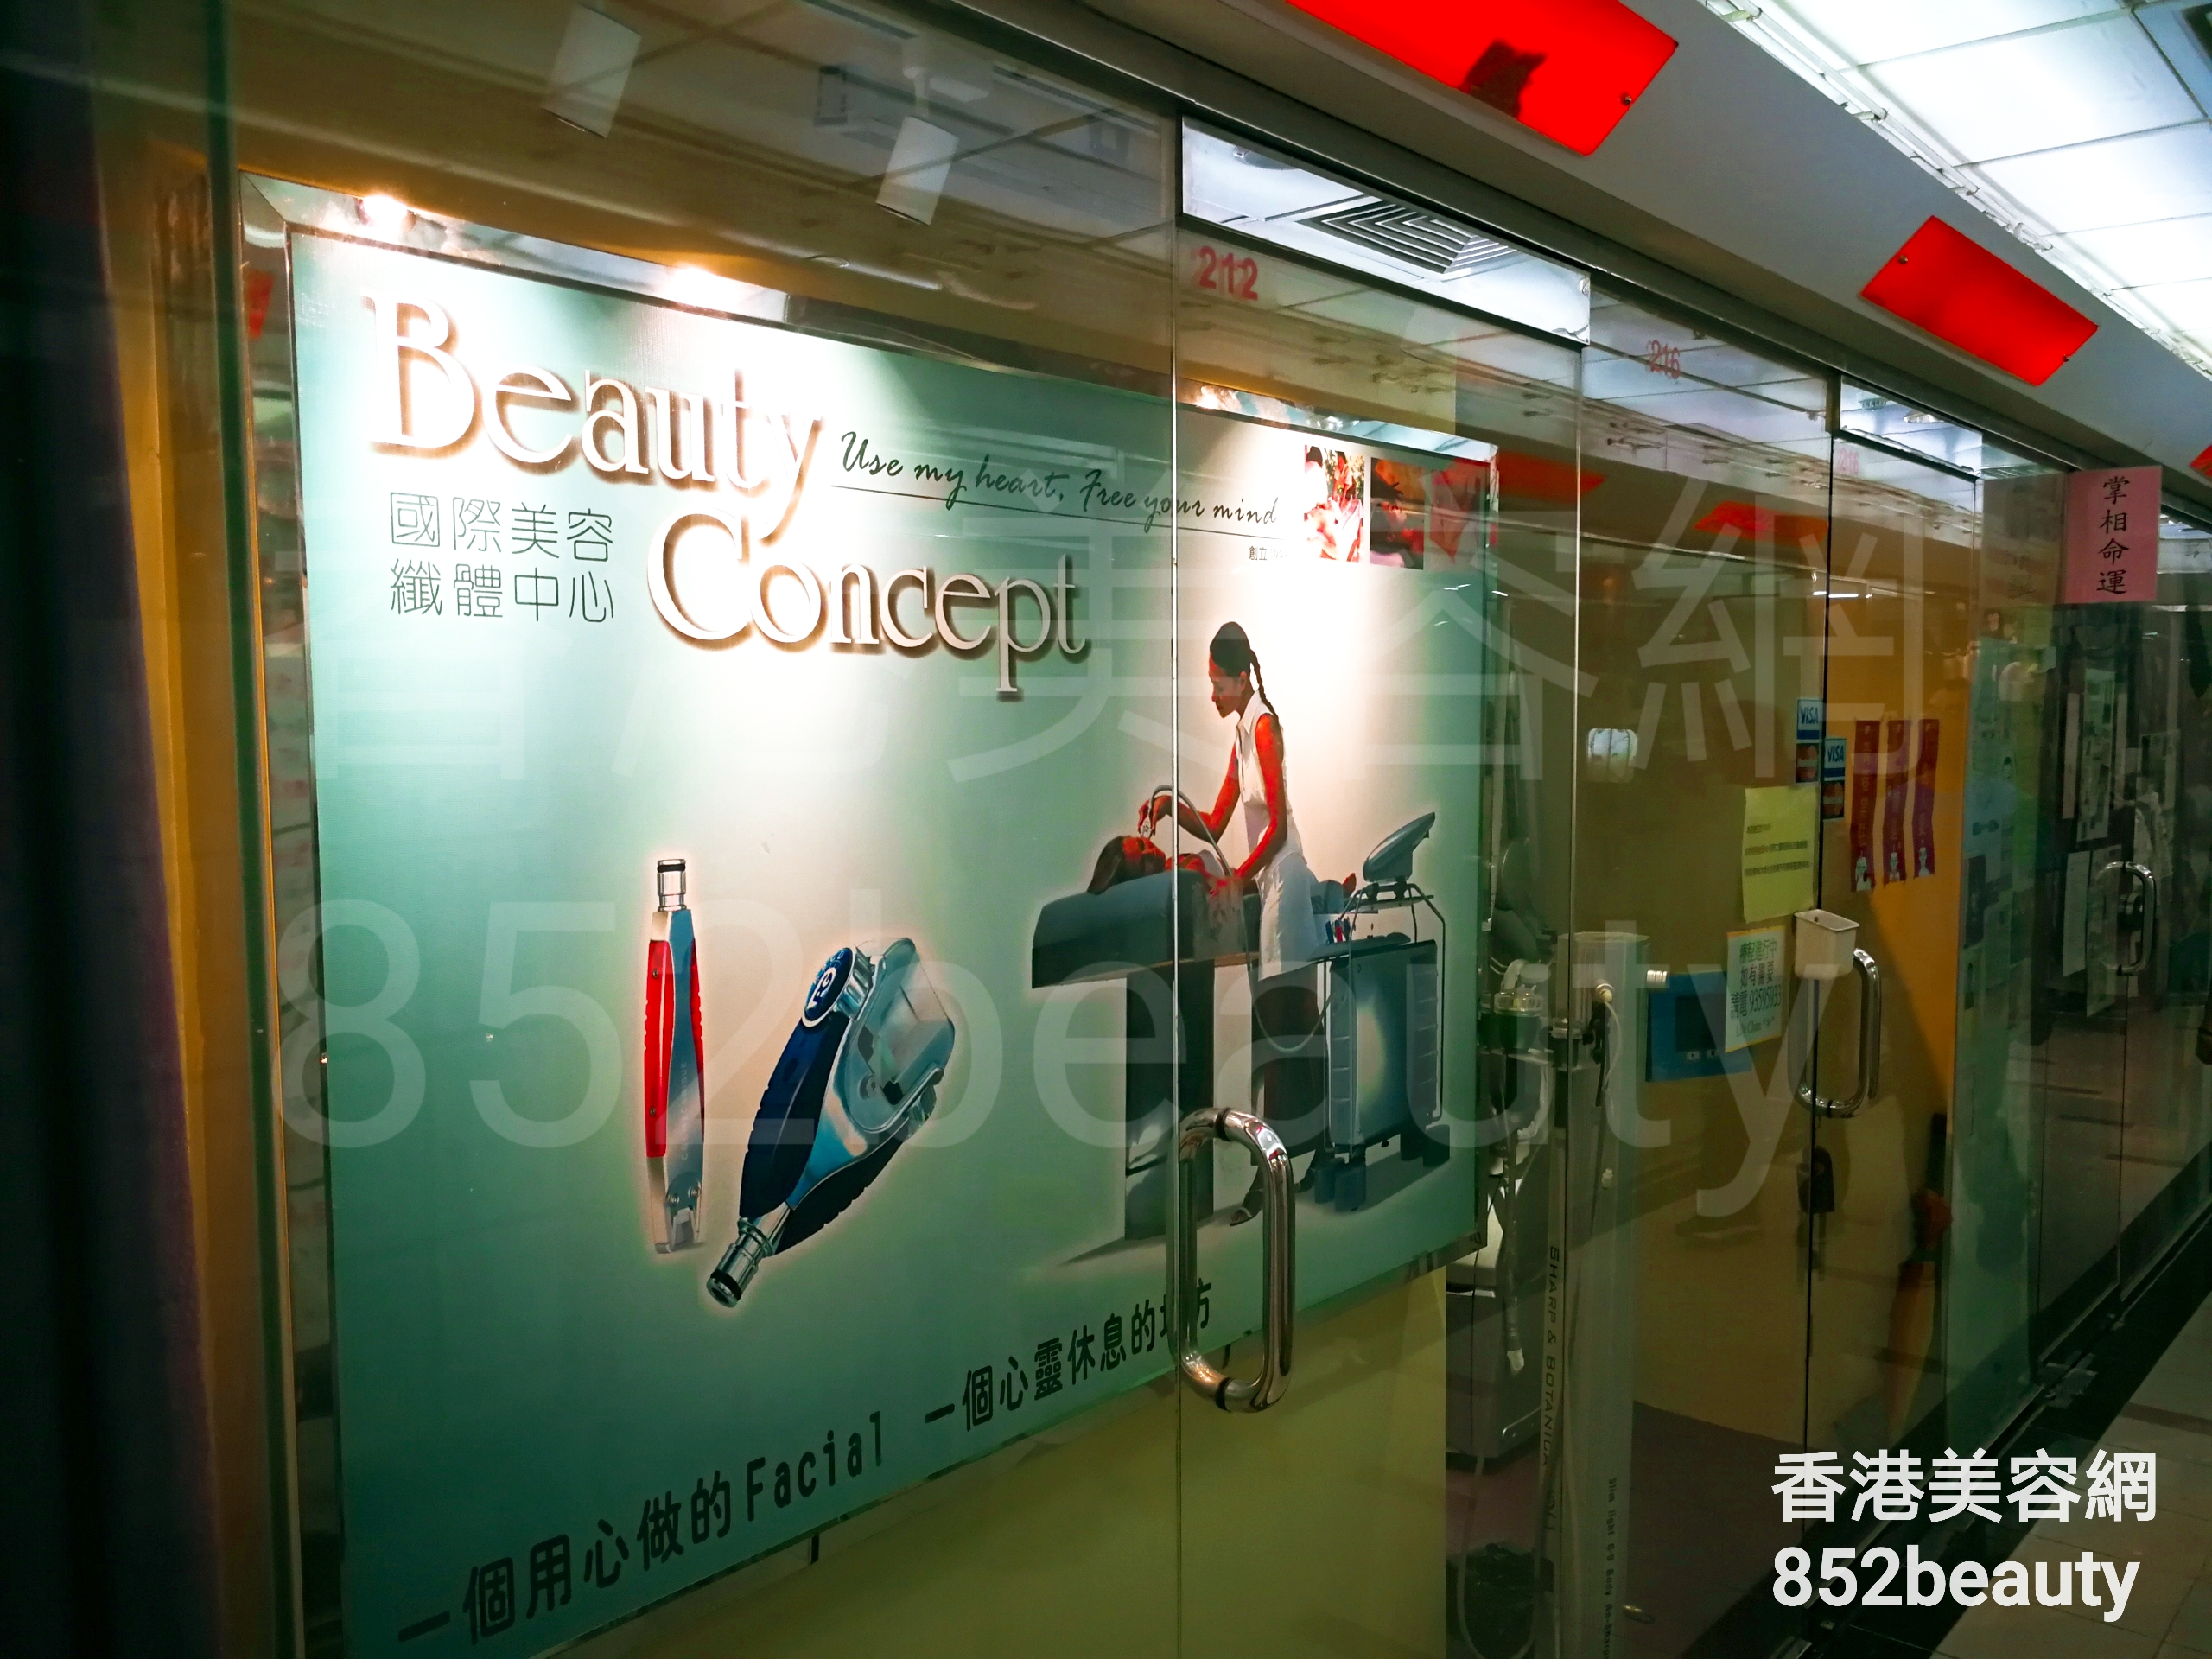 香港美容網 Hong Kong Beauty Salon 美容院 / 美容師: Beauty Concept 國際美容纖體中心